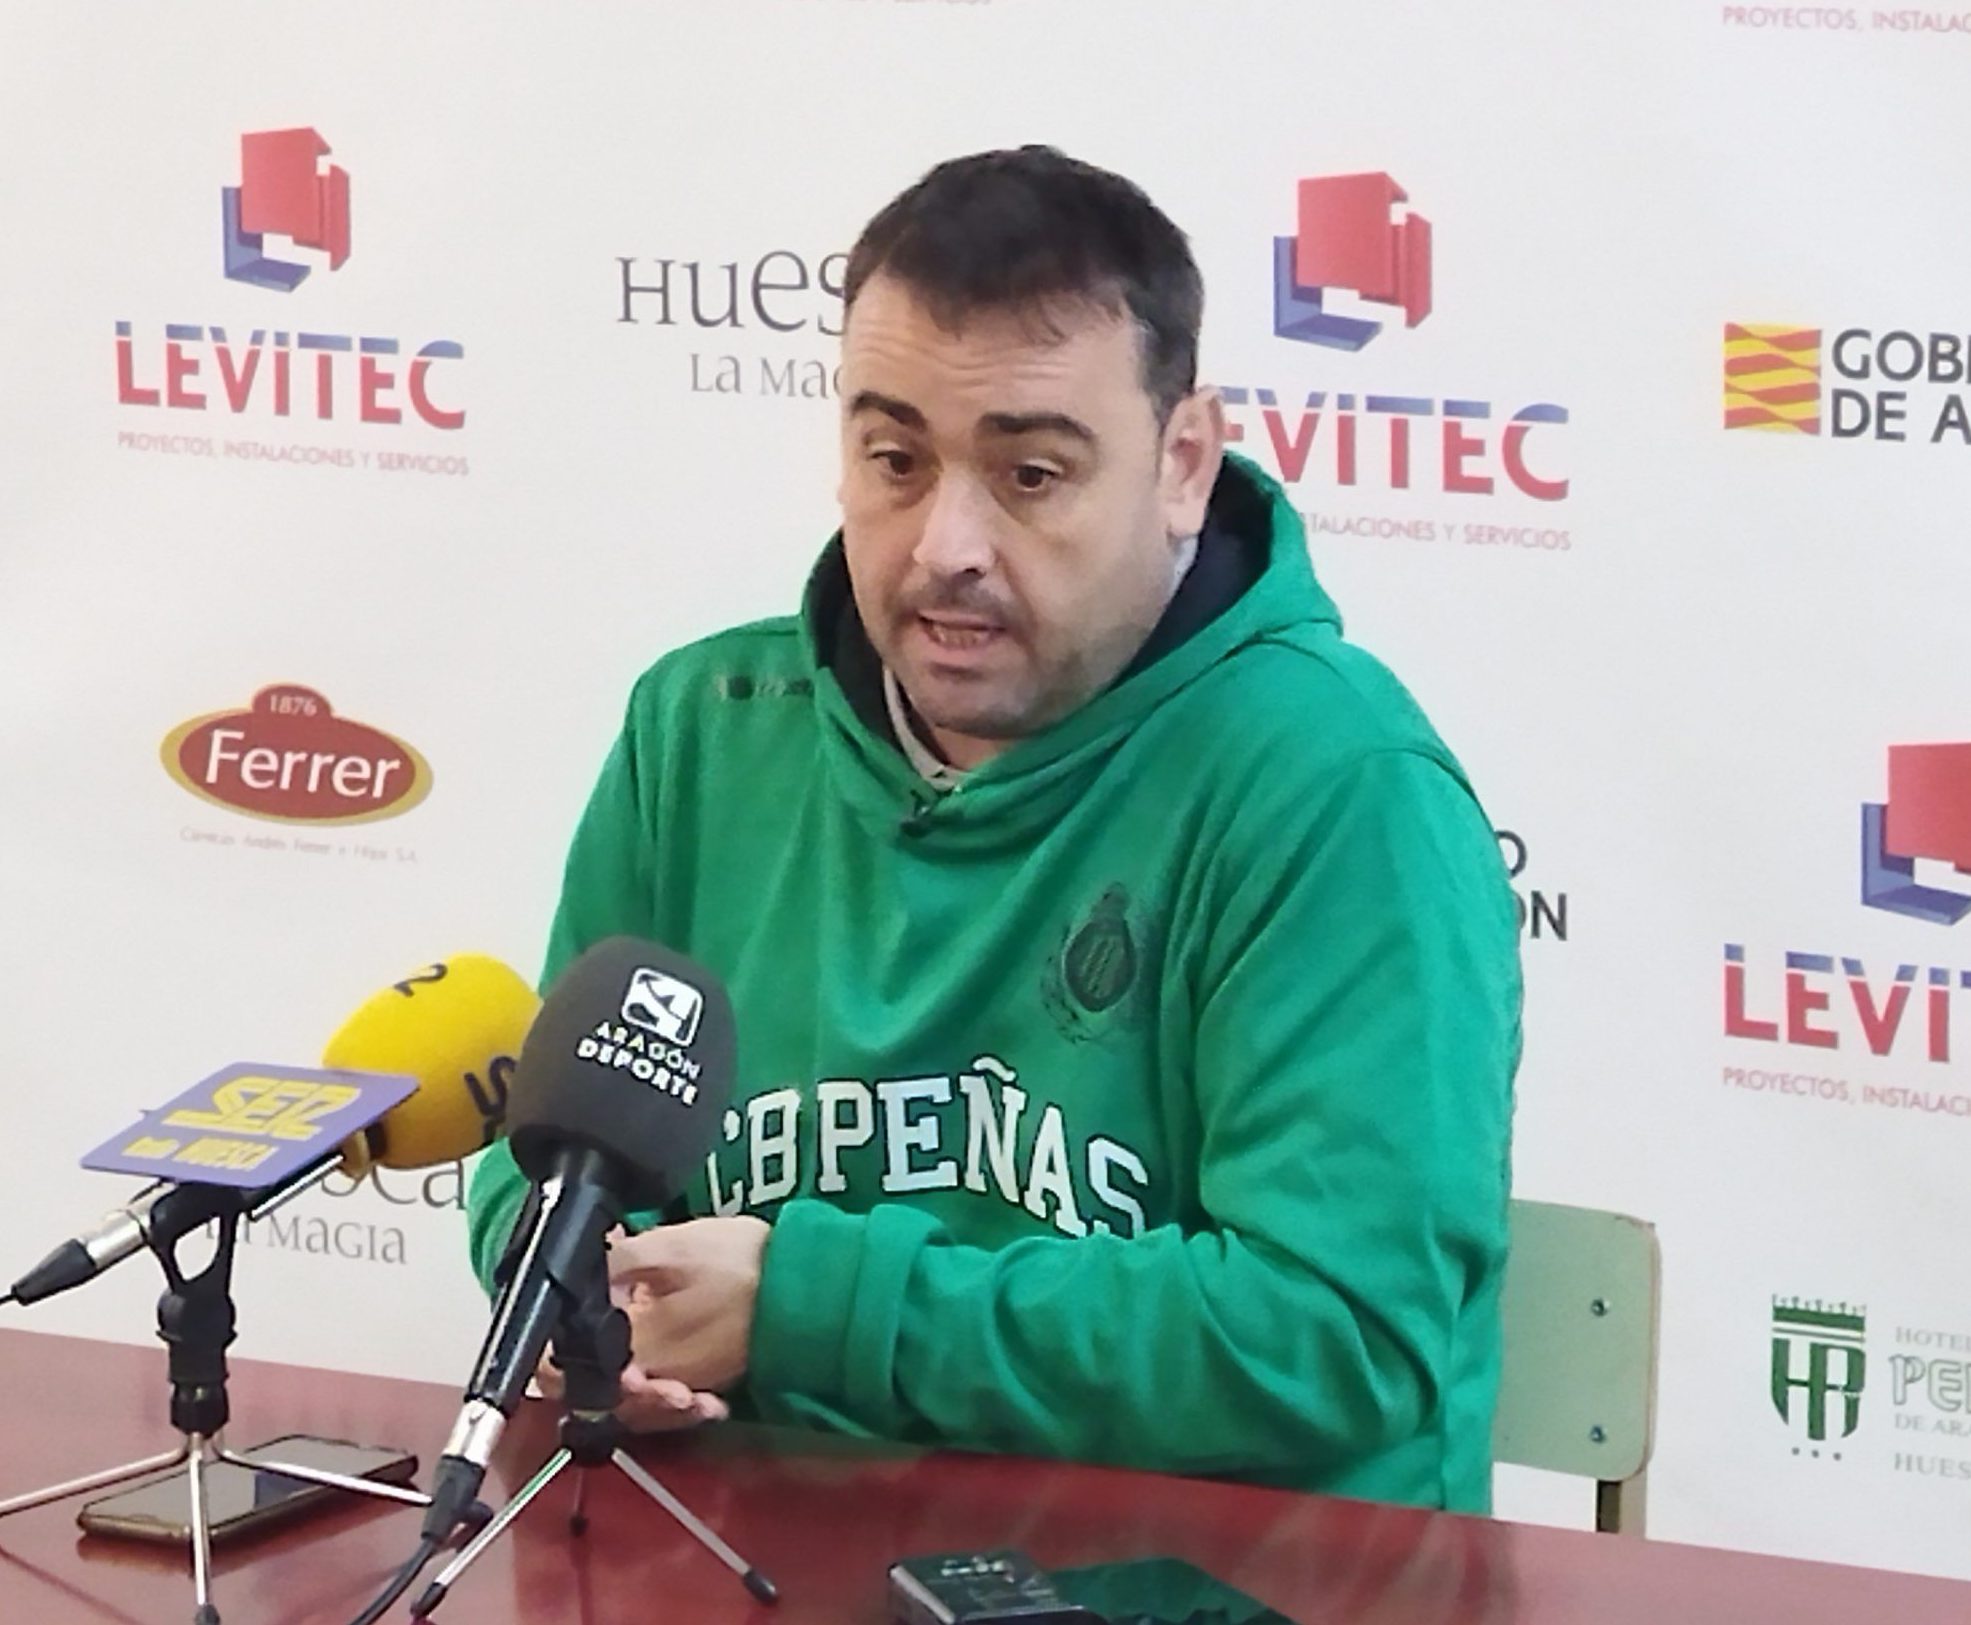 Sergio Lamúa, técnico del Levitec Huesca durante una rueda de prensa. Foto: Sportaragon